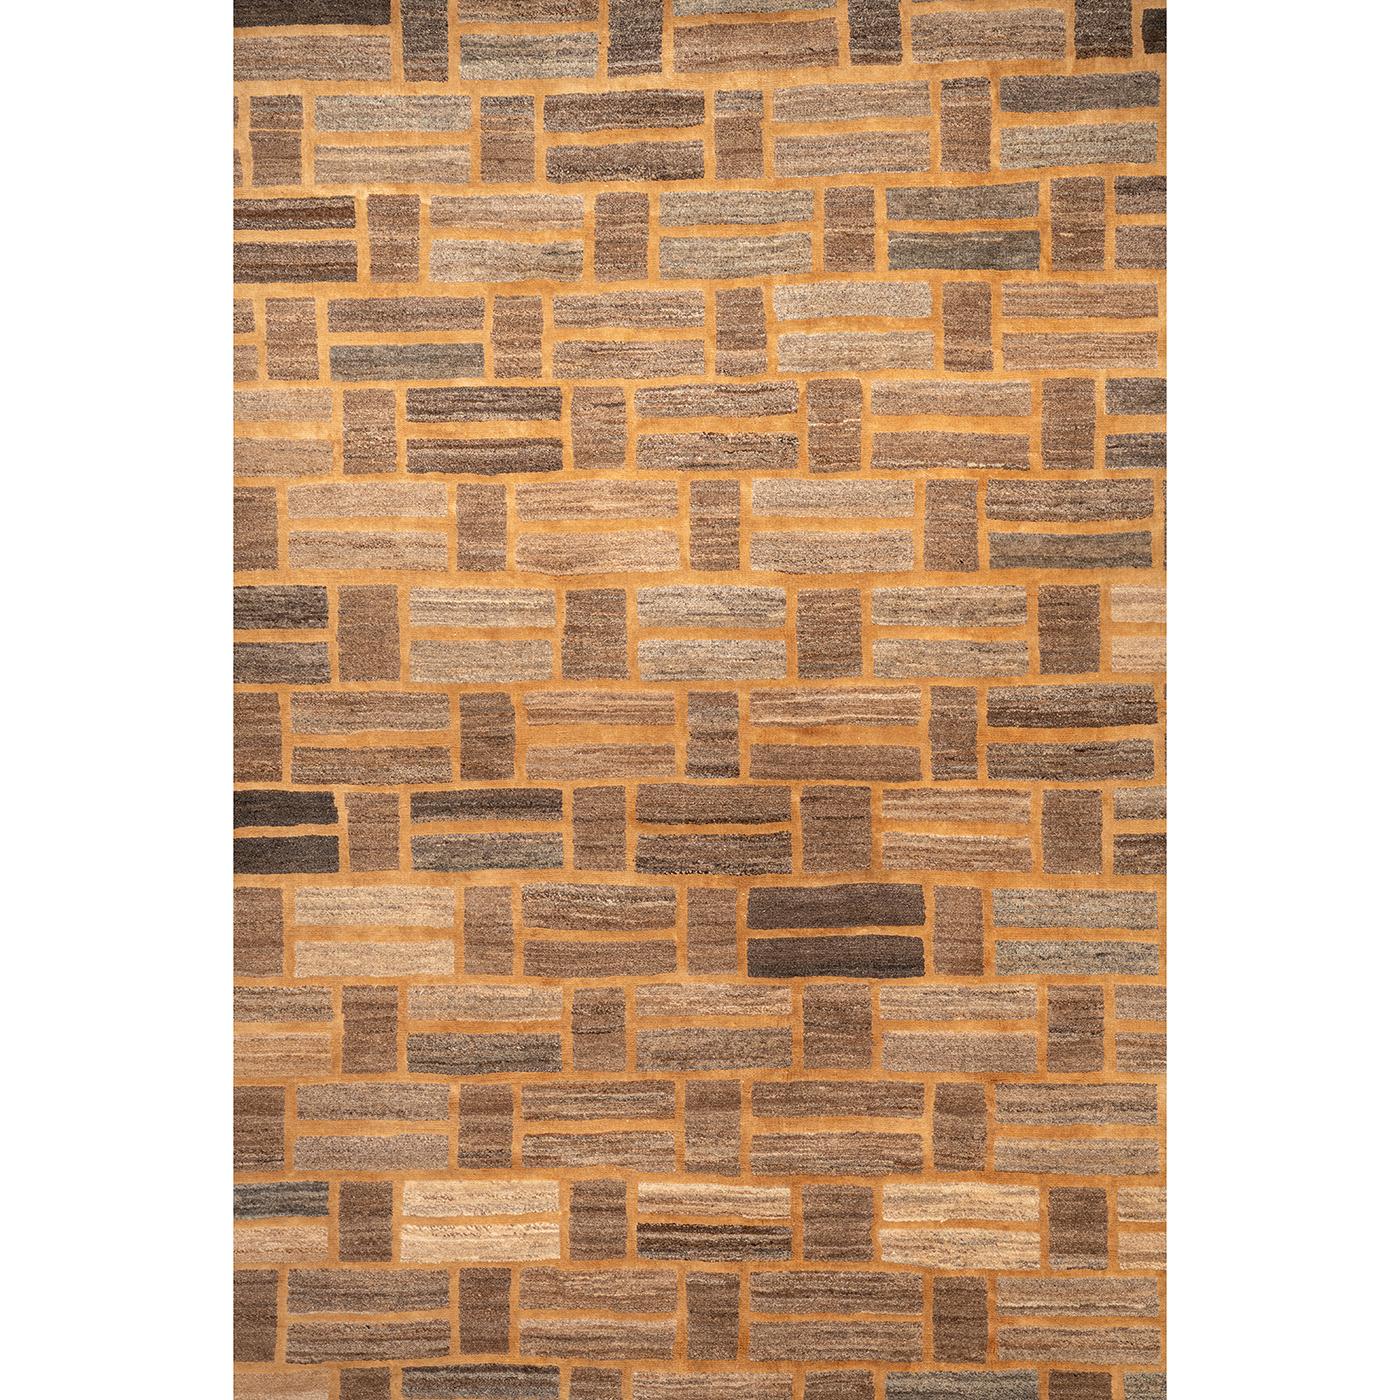 Nommé d'après le motif géométrique rappelant un mur de briques, ce tapis accrocheur est tissé à la main en Iran à l'aide d'une technique de nouage iranienne traditionnelle. Tissé à partir de la laine et du chanvre les plus fins, la chaleur